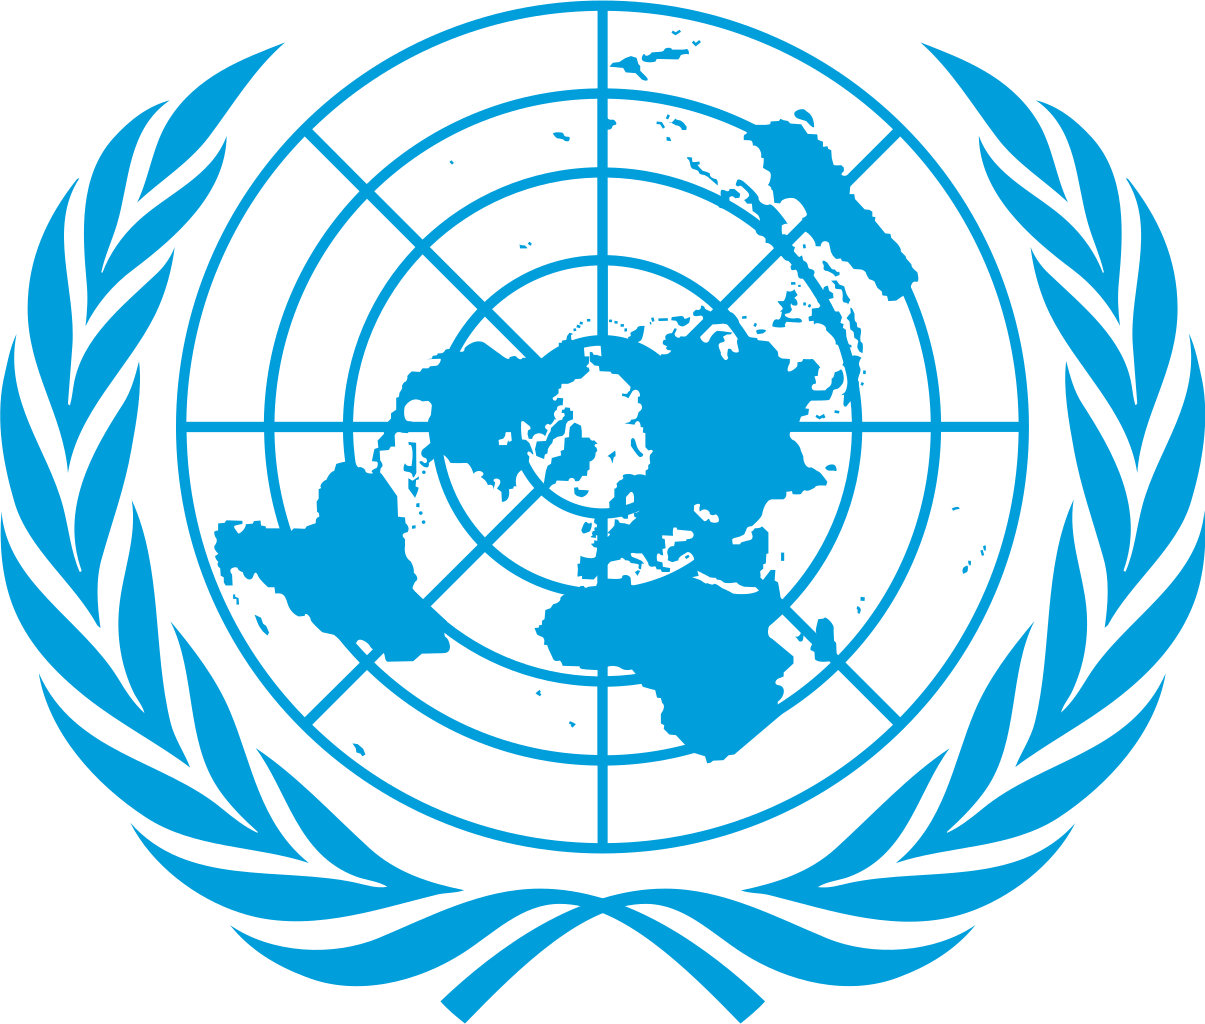 United Nations Office at Nairobi UNON